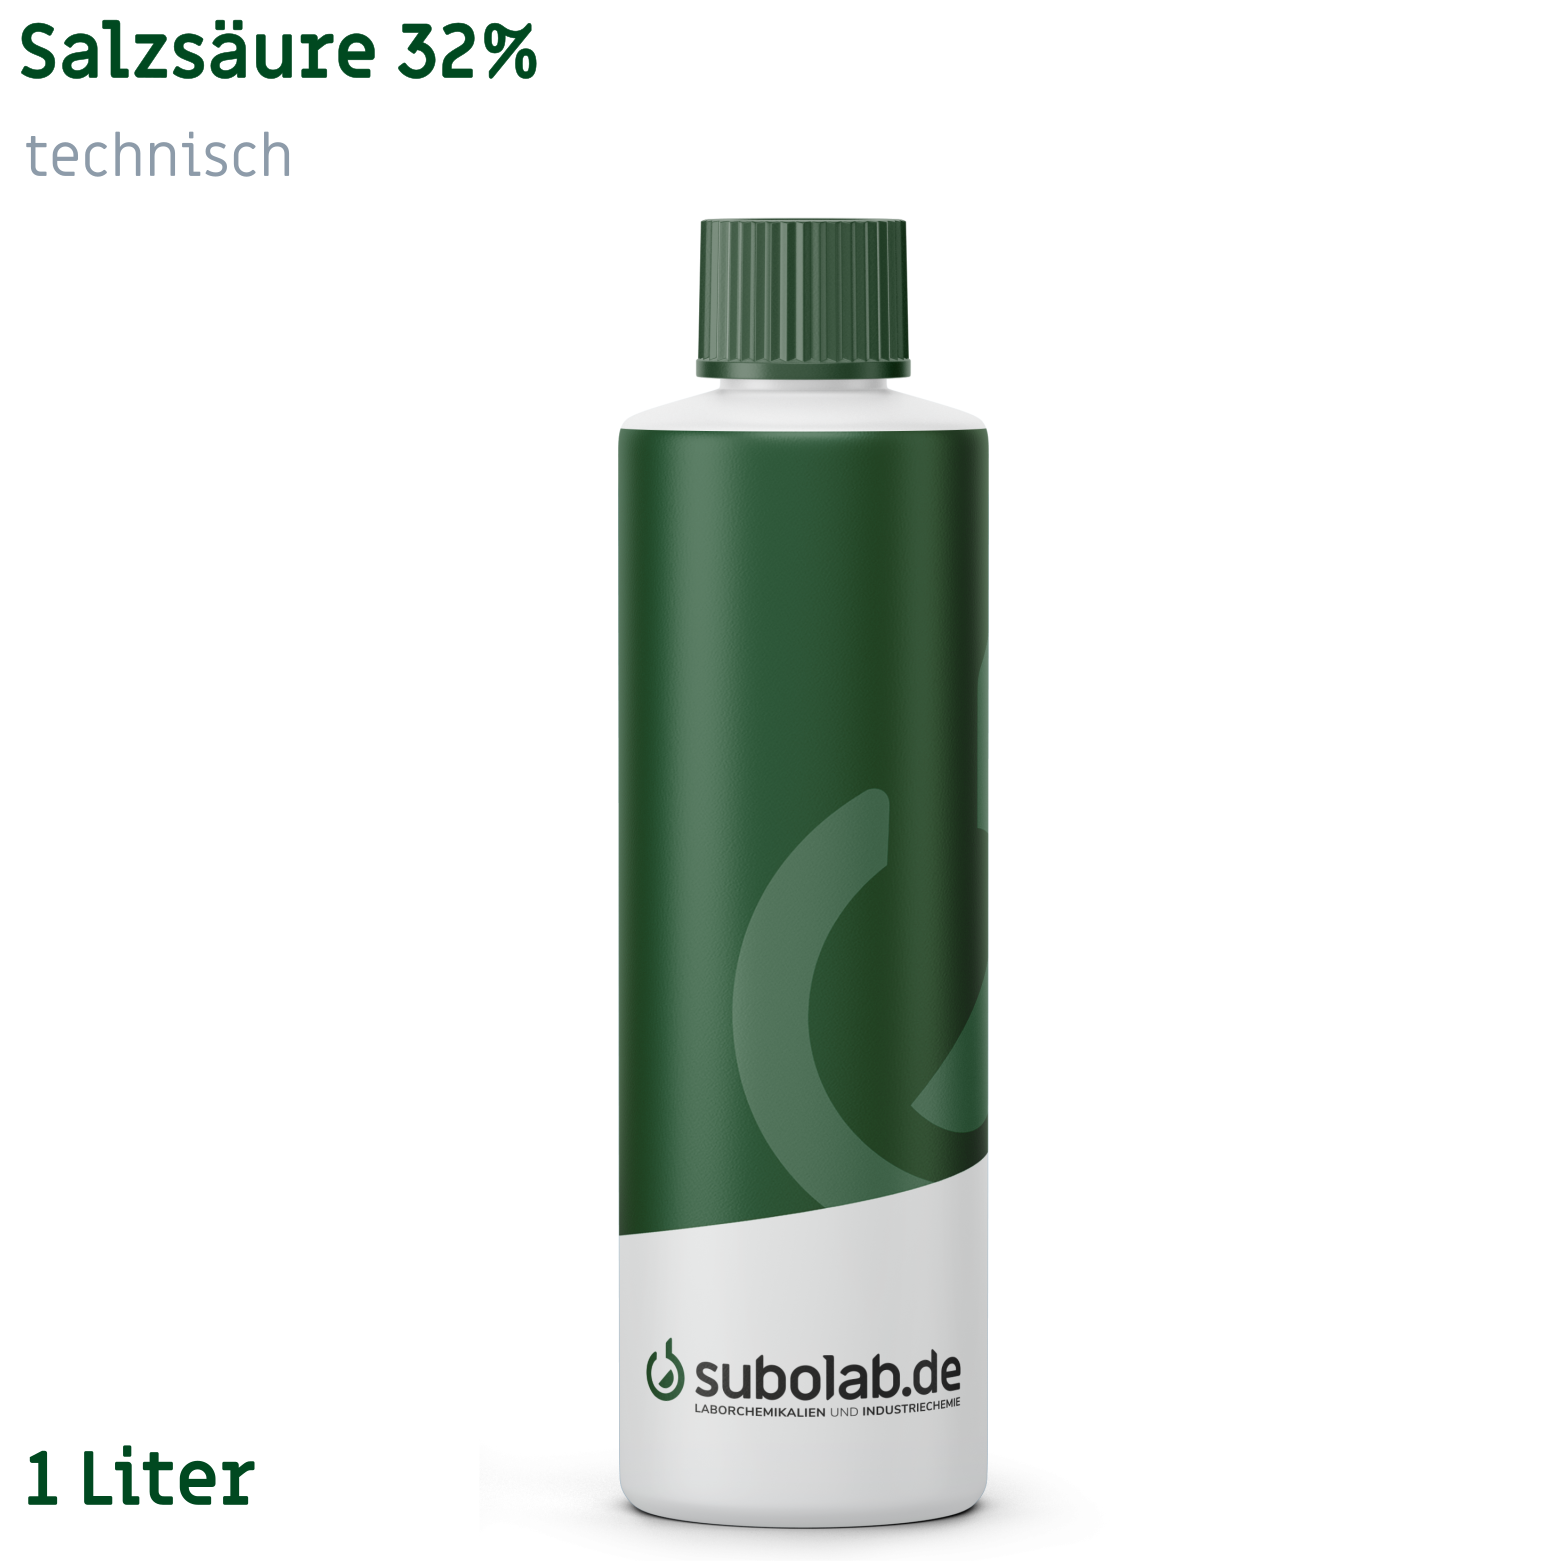 Bild von Salzsäure 32% technisch (1 Liter)